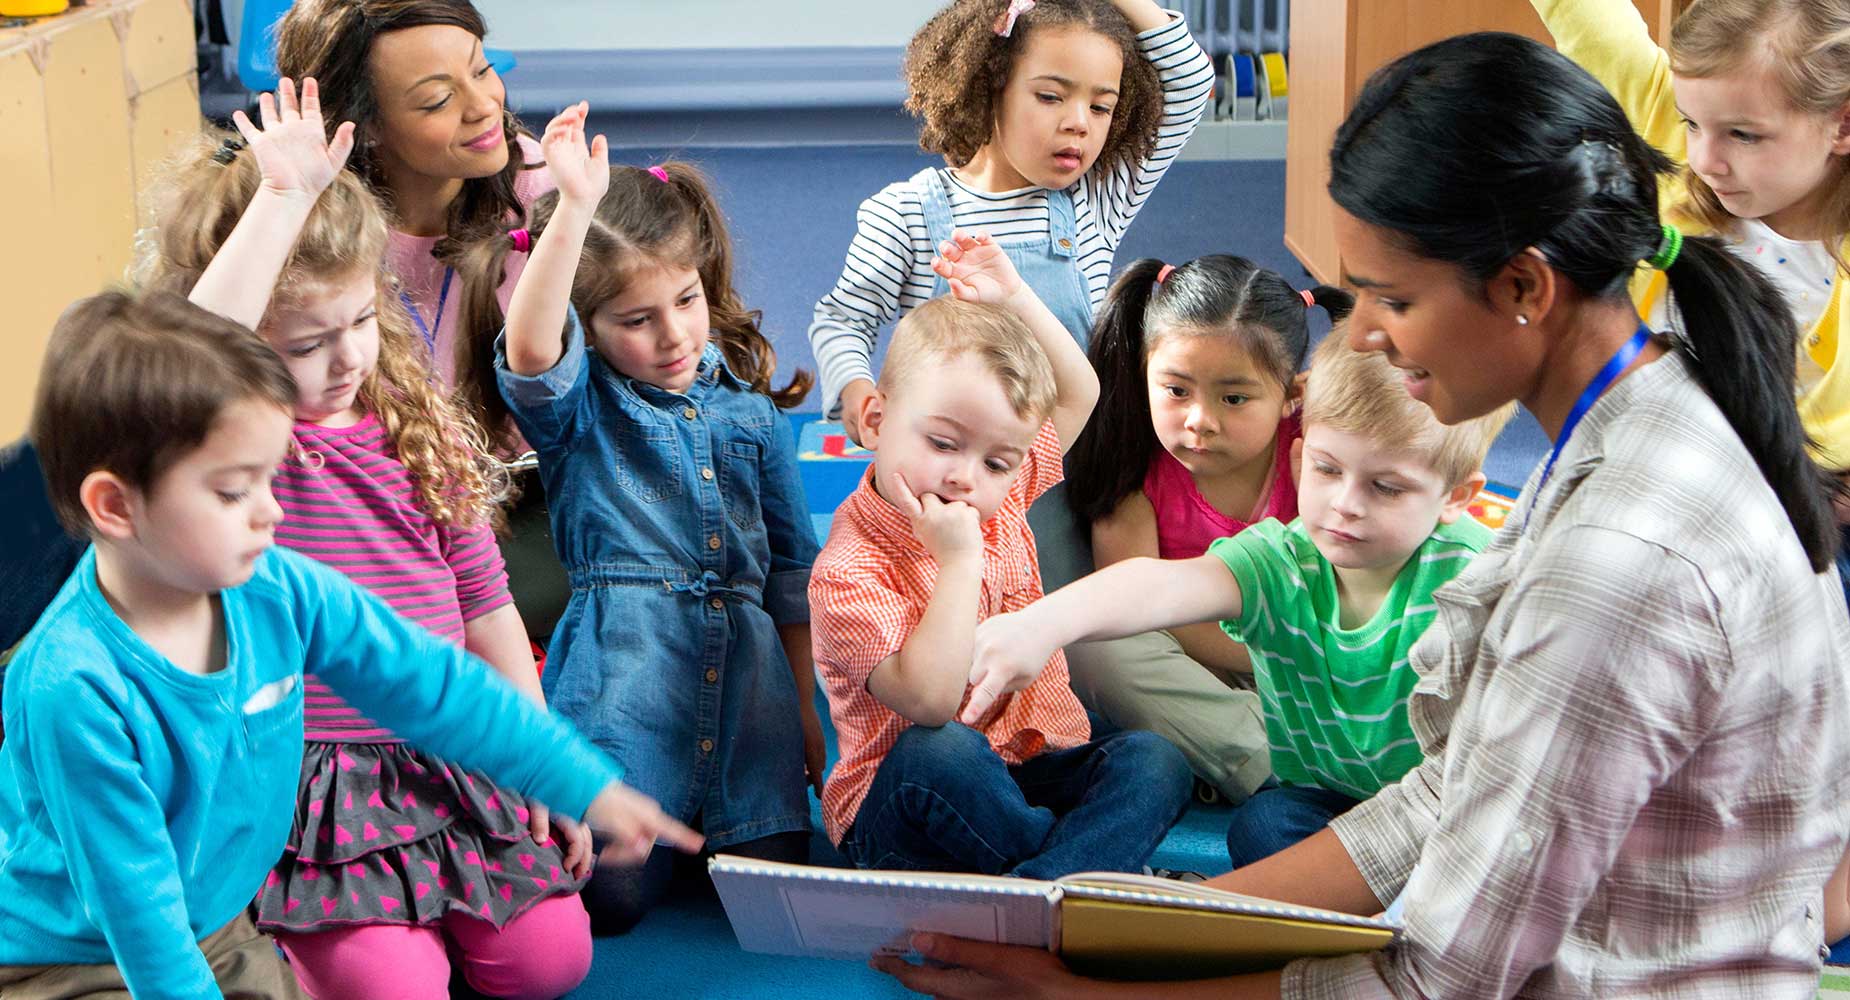 A preschool teacher reads a book to a group of young children.